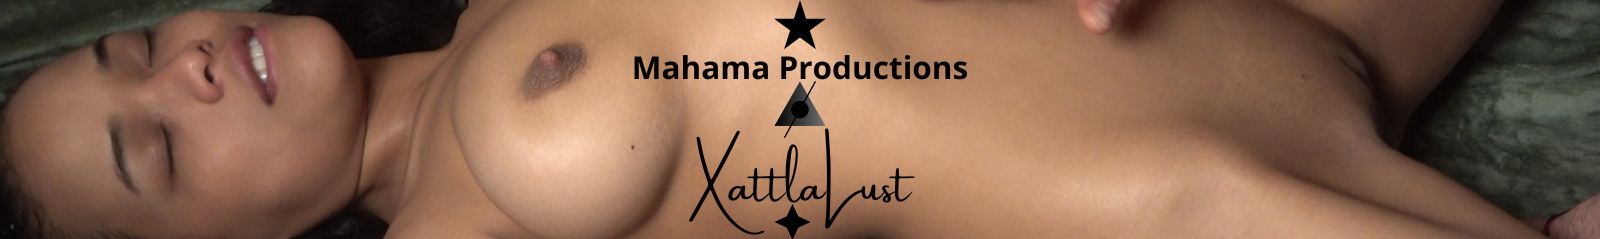 Mahama Productions